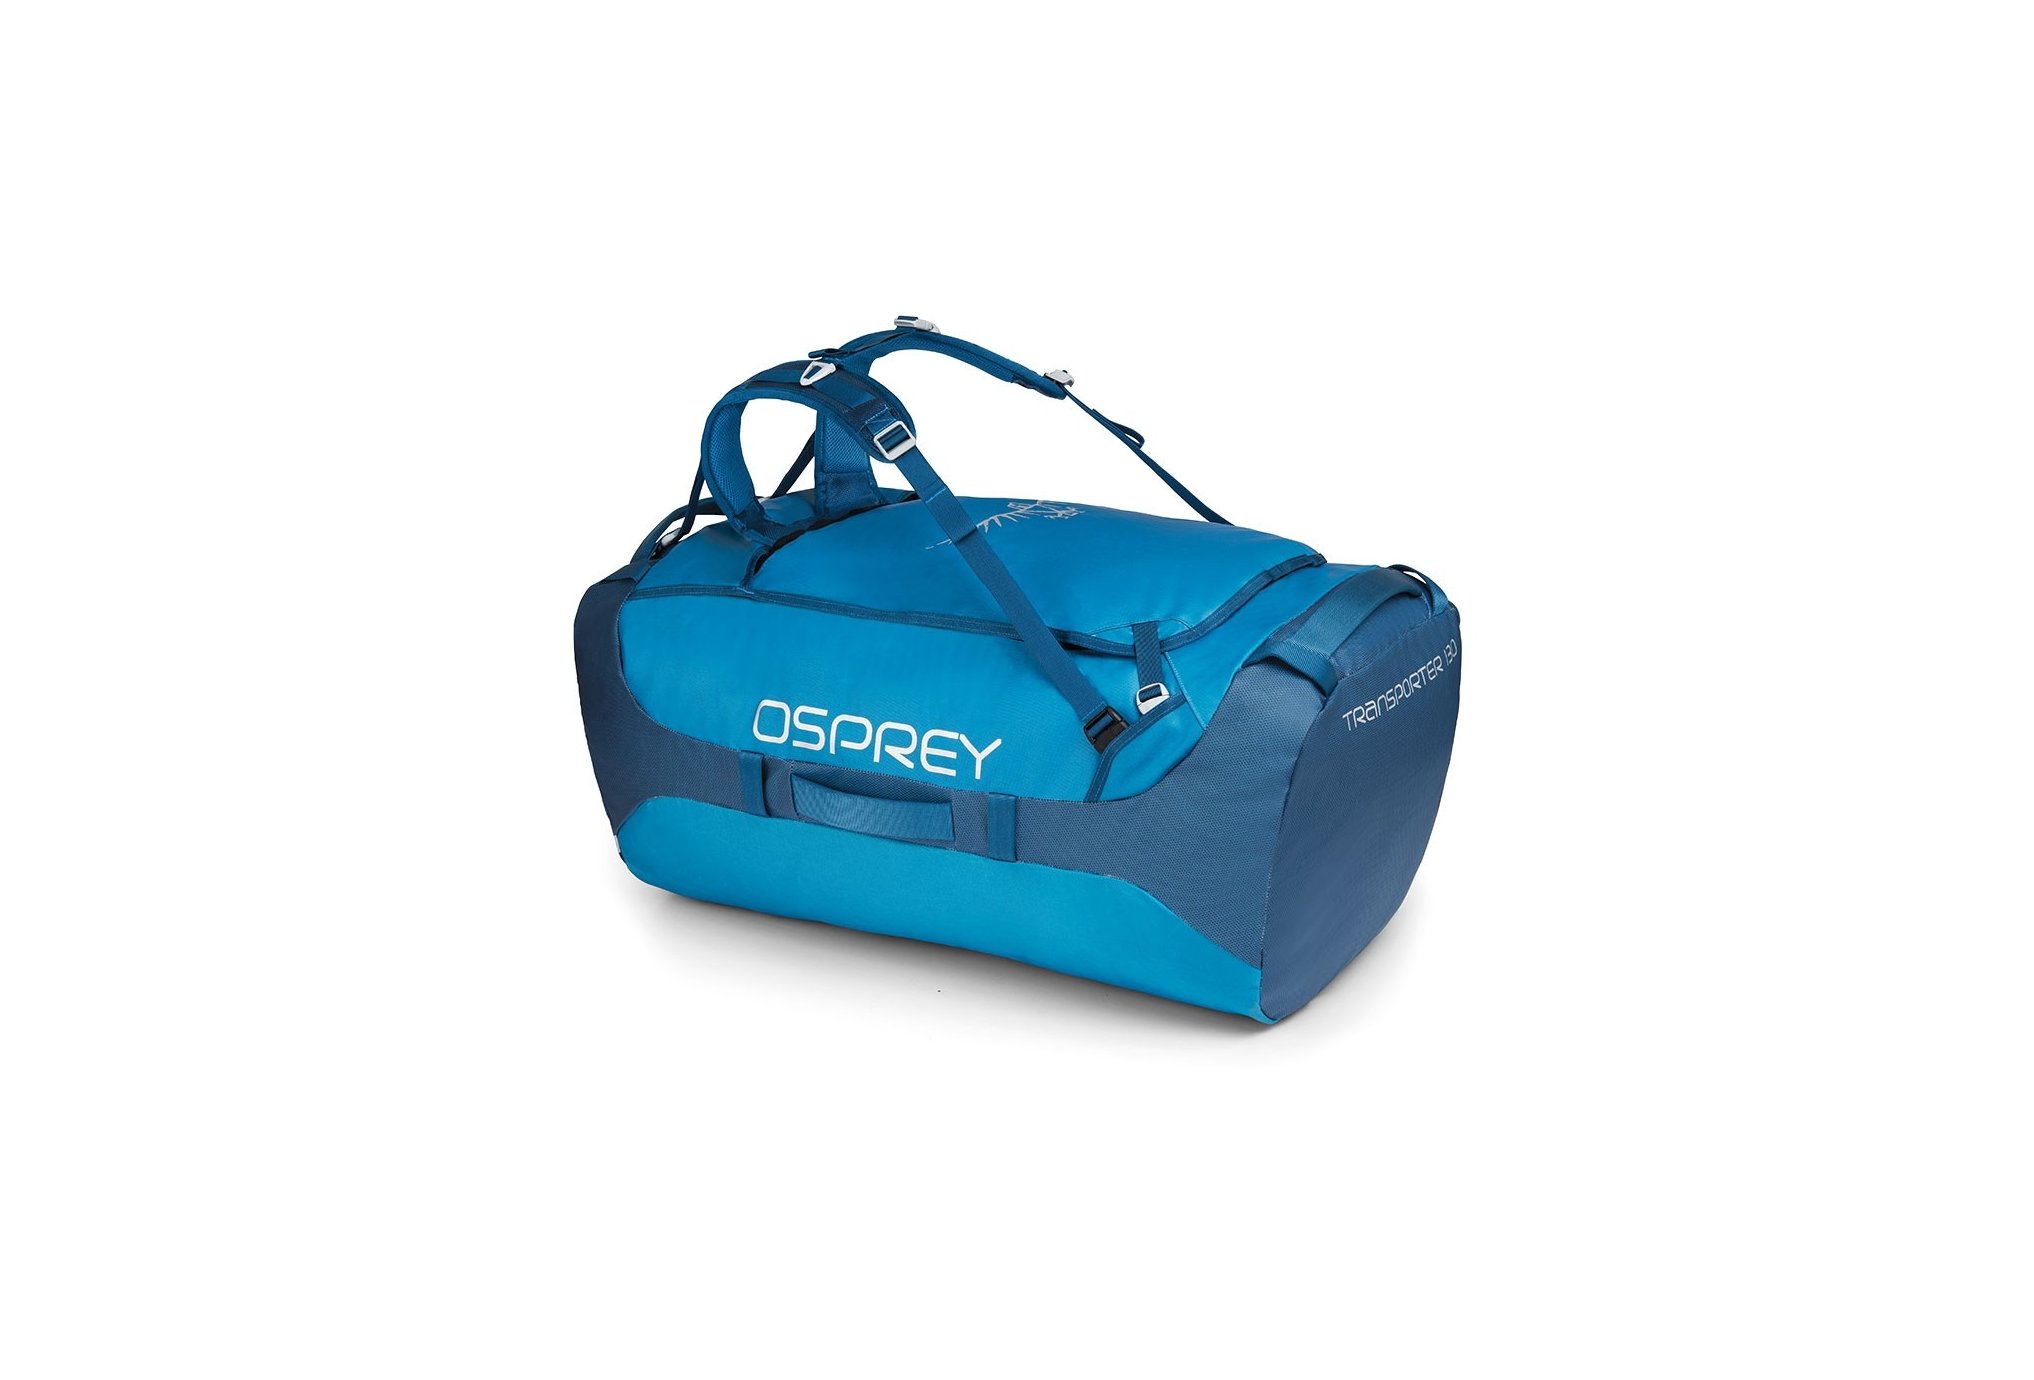 Osprey Transporter 130 sac de sport